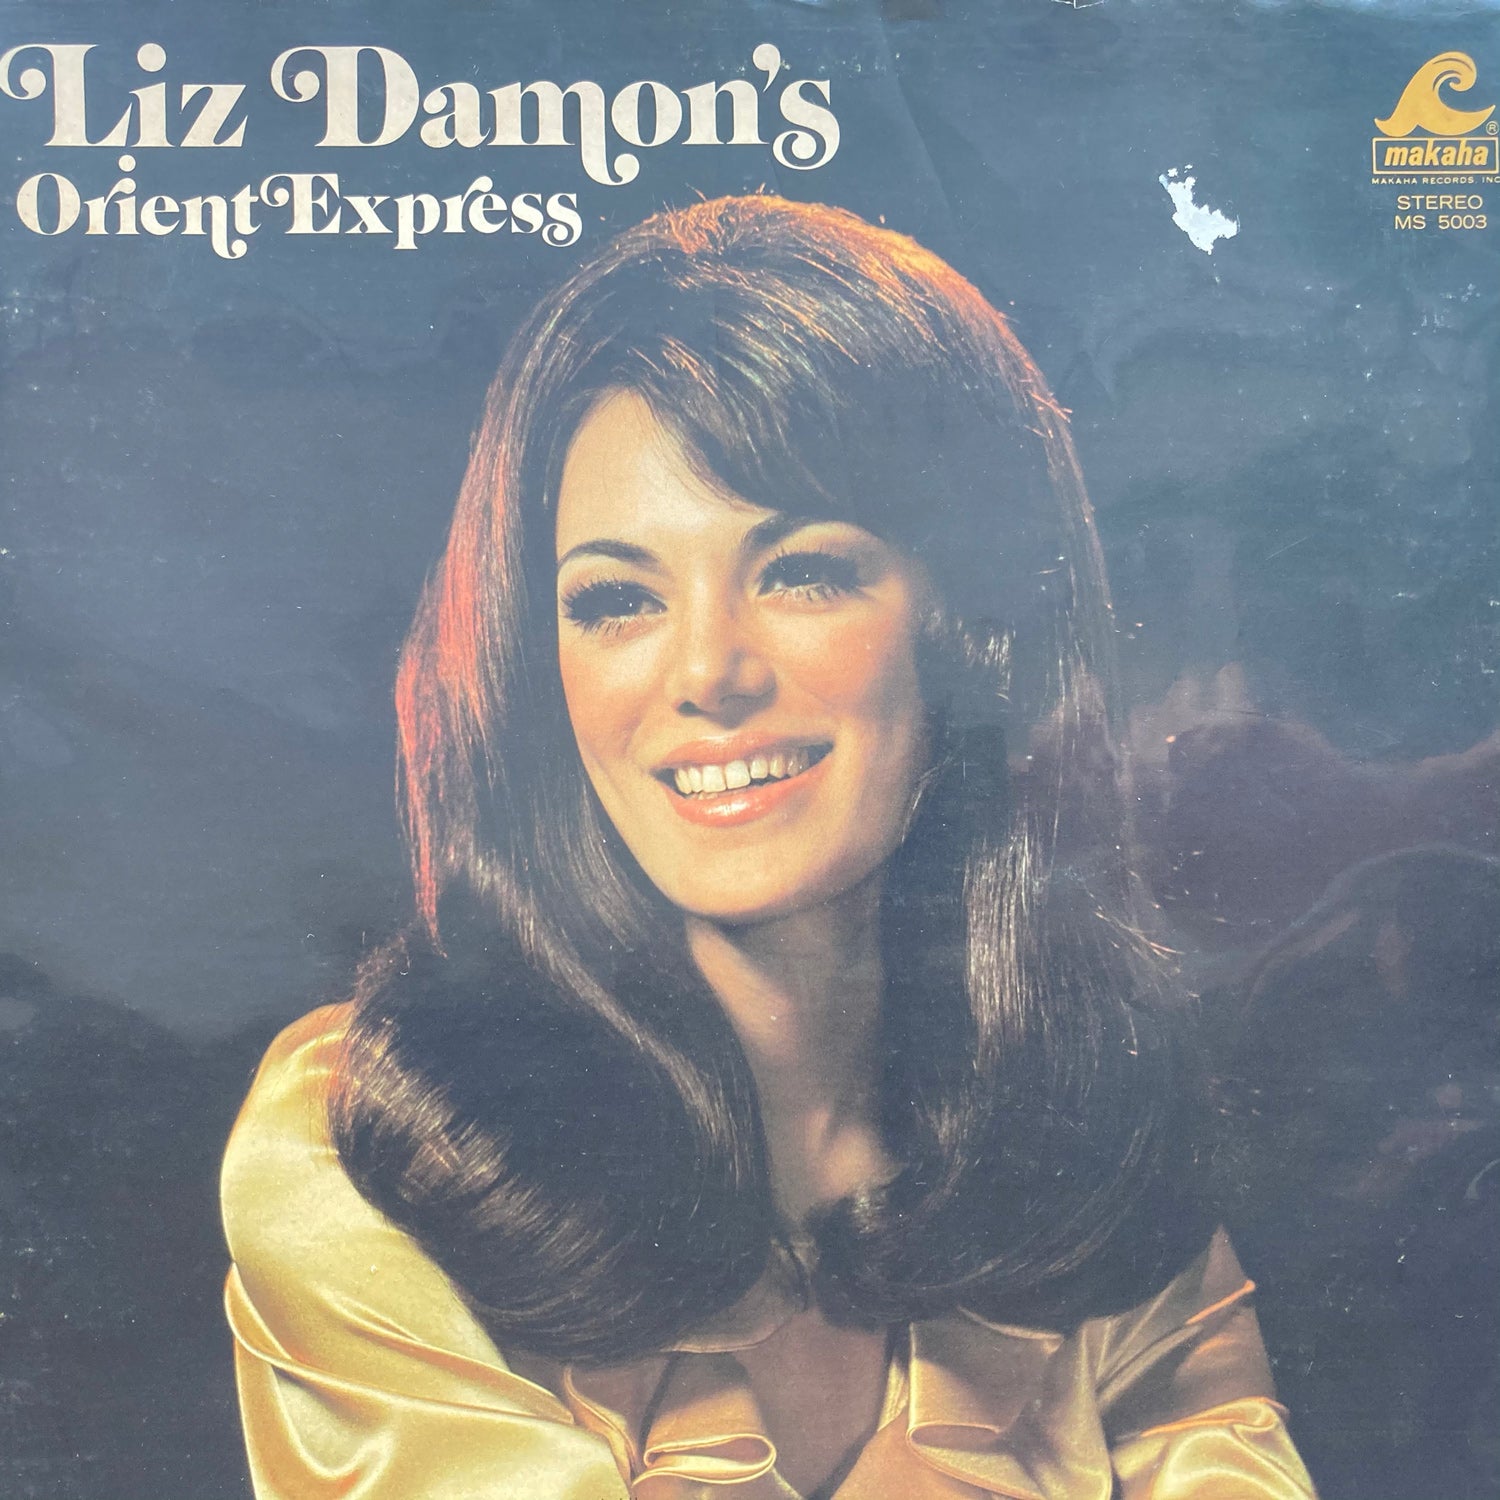 Liz Damon's Orient Express - Live at the Garden Bar